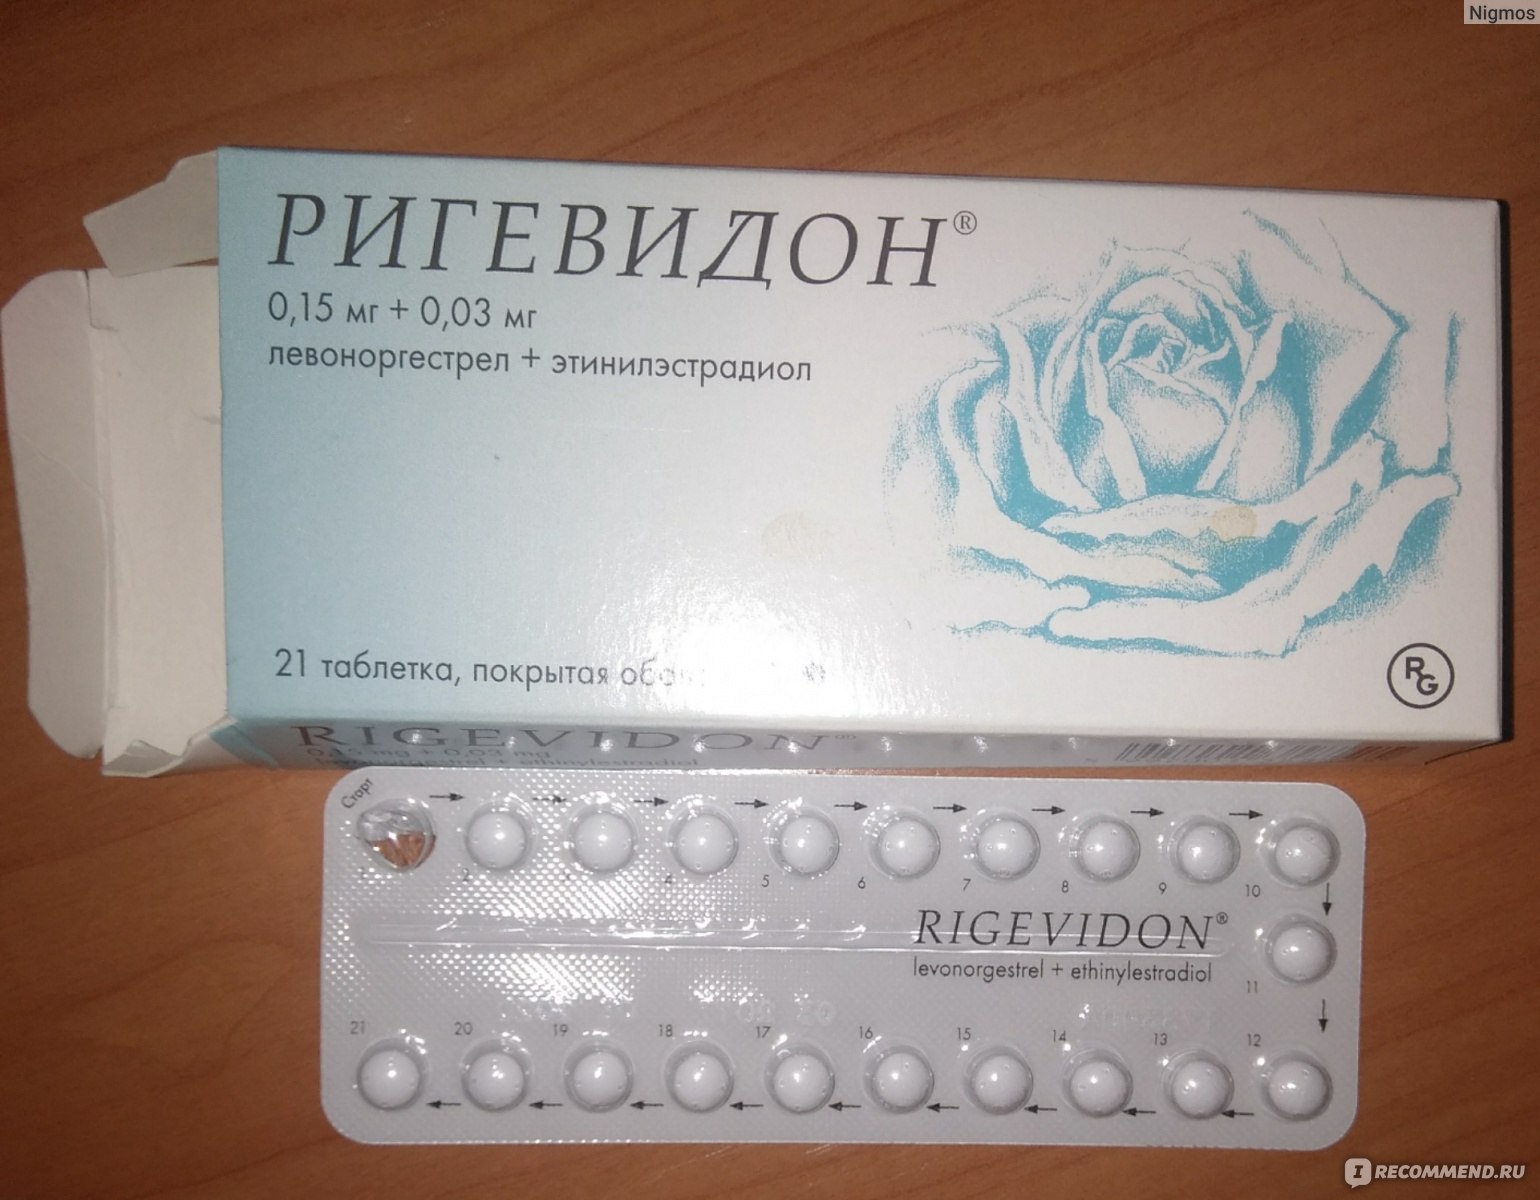 Если выпить противозачаточные после. Противозачаточные таблетки ригевидон. Гормональный препарат ригевидон. Противозачаточные таблетки для женщин ригевидон. Таблетки противозачаточные реговидон.